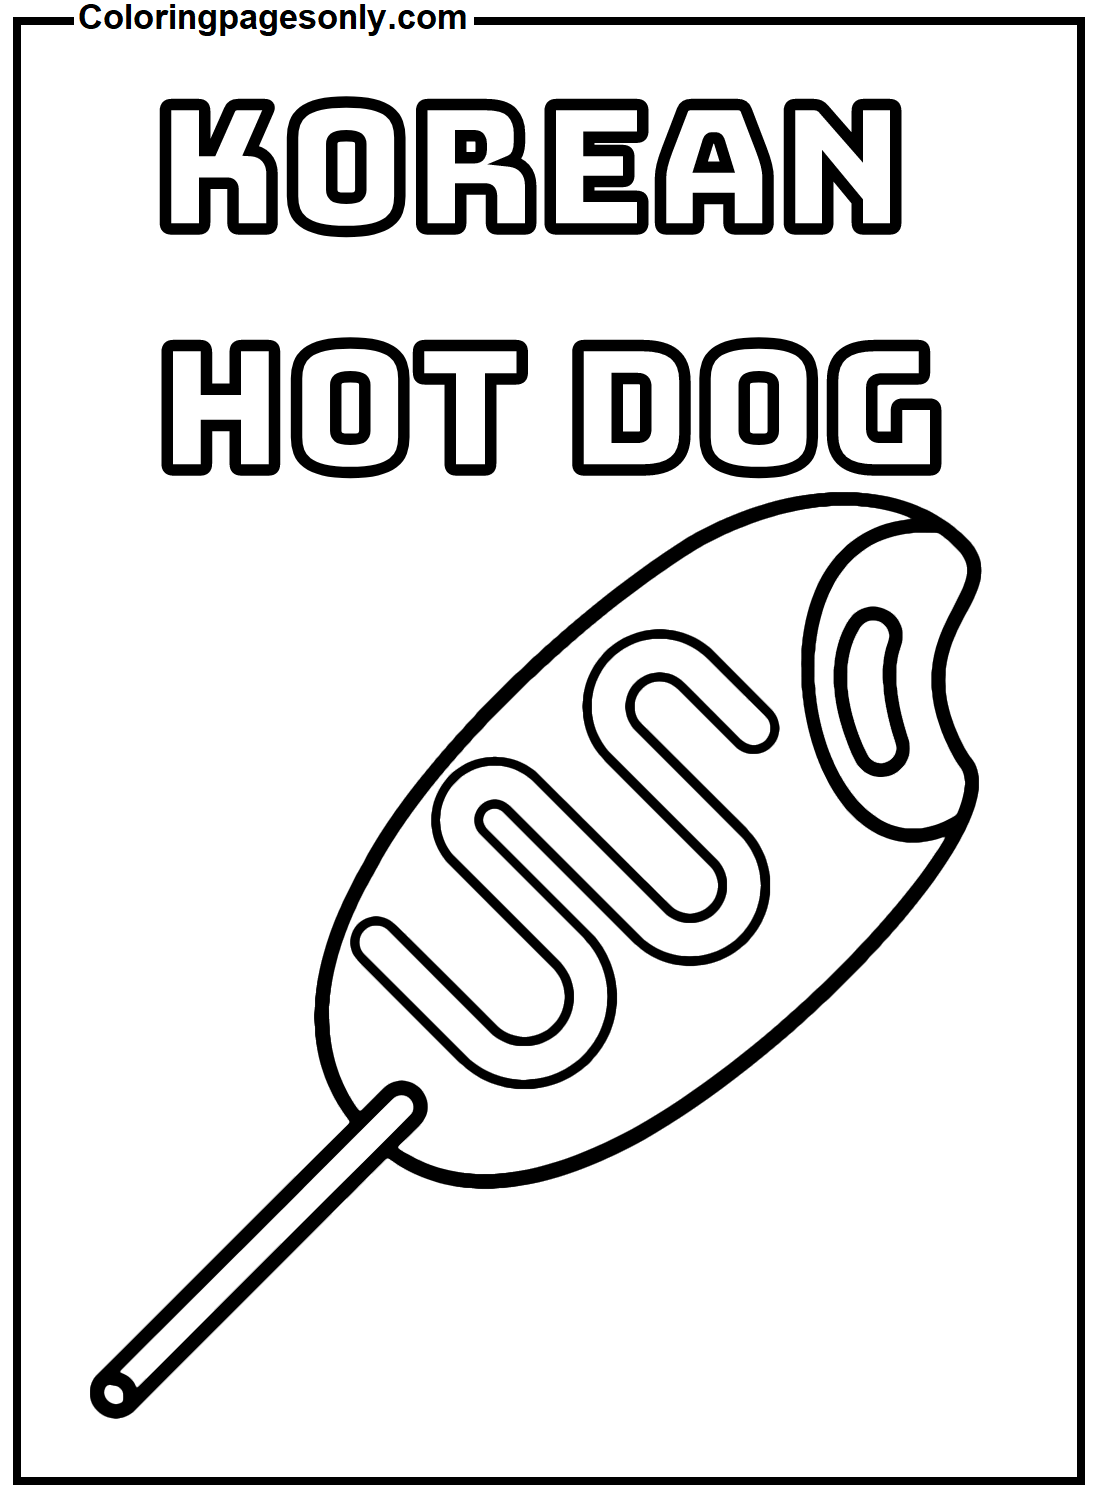 Hot Dog coreano da Hot Dog